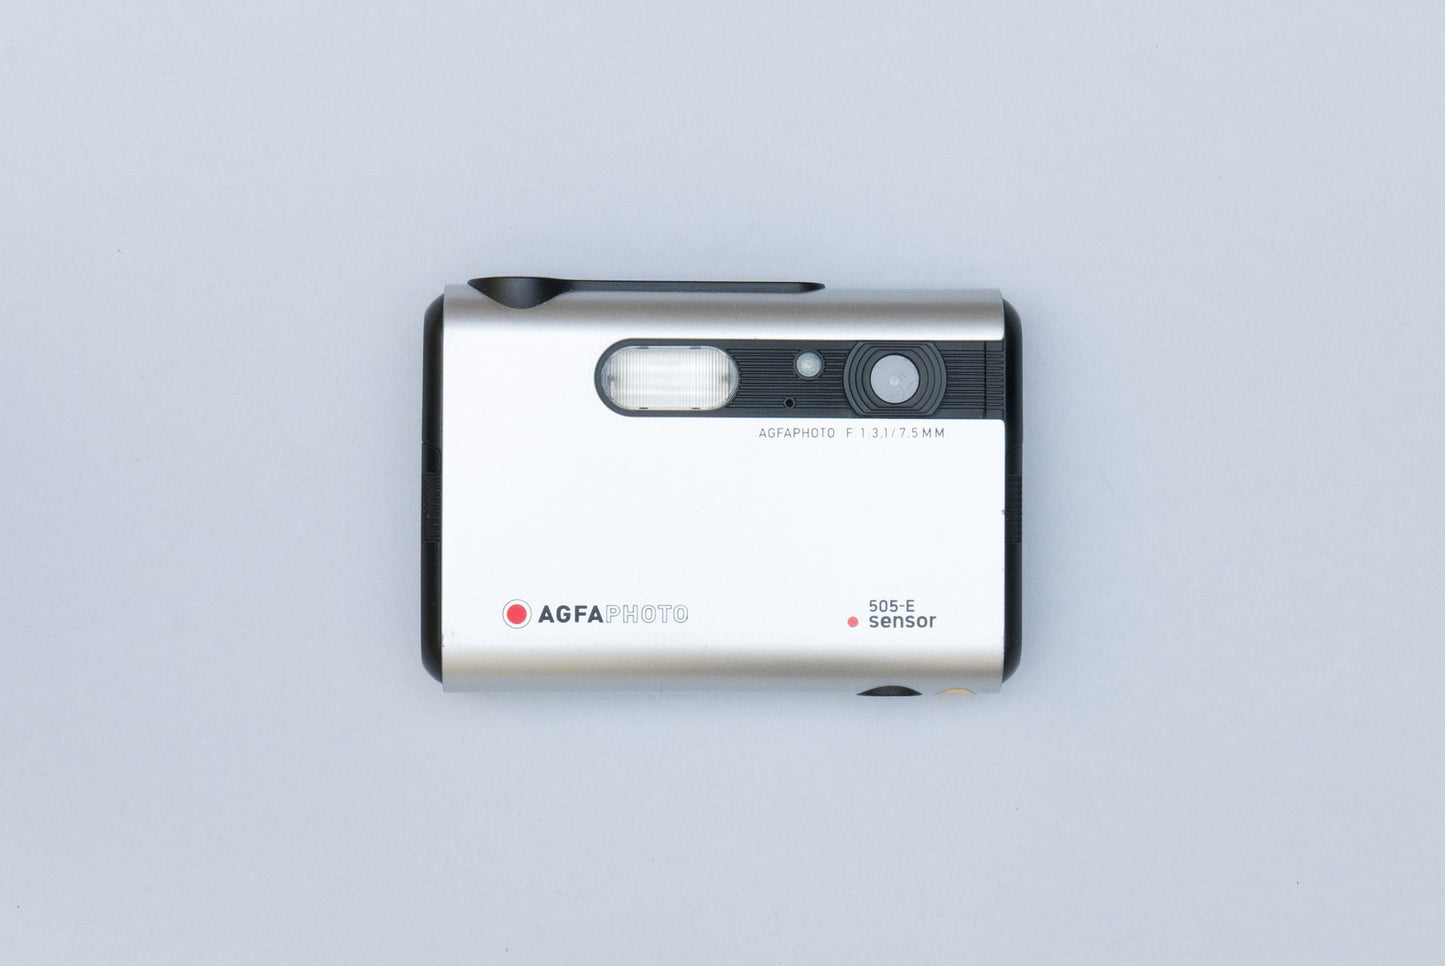 AgfaPhoto 505-E Sensor Y2K Digital Camera